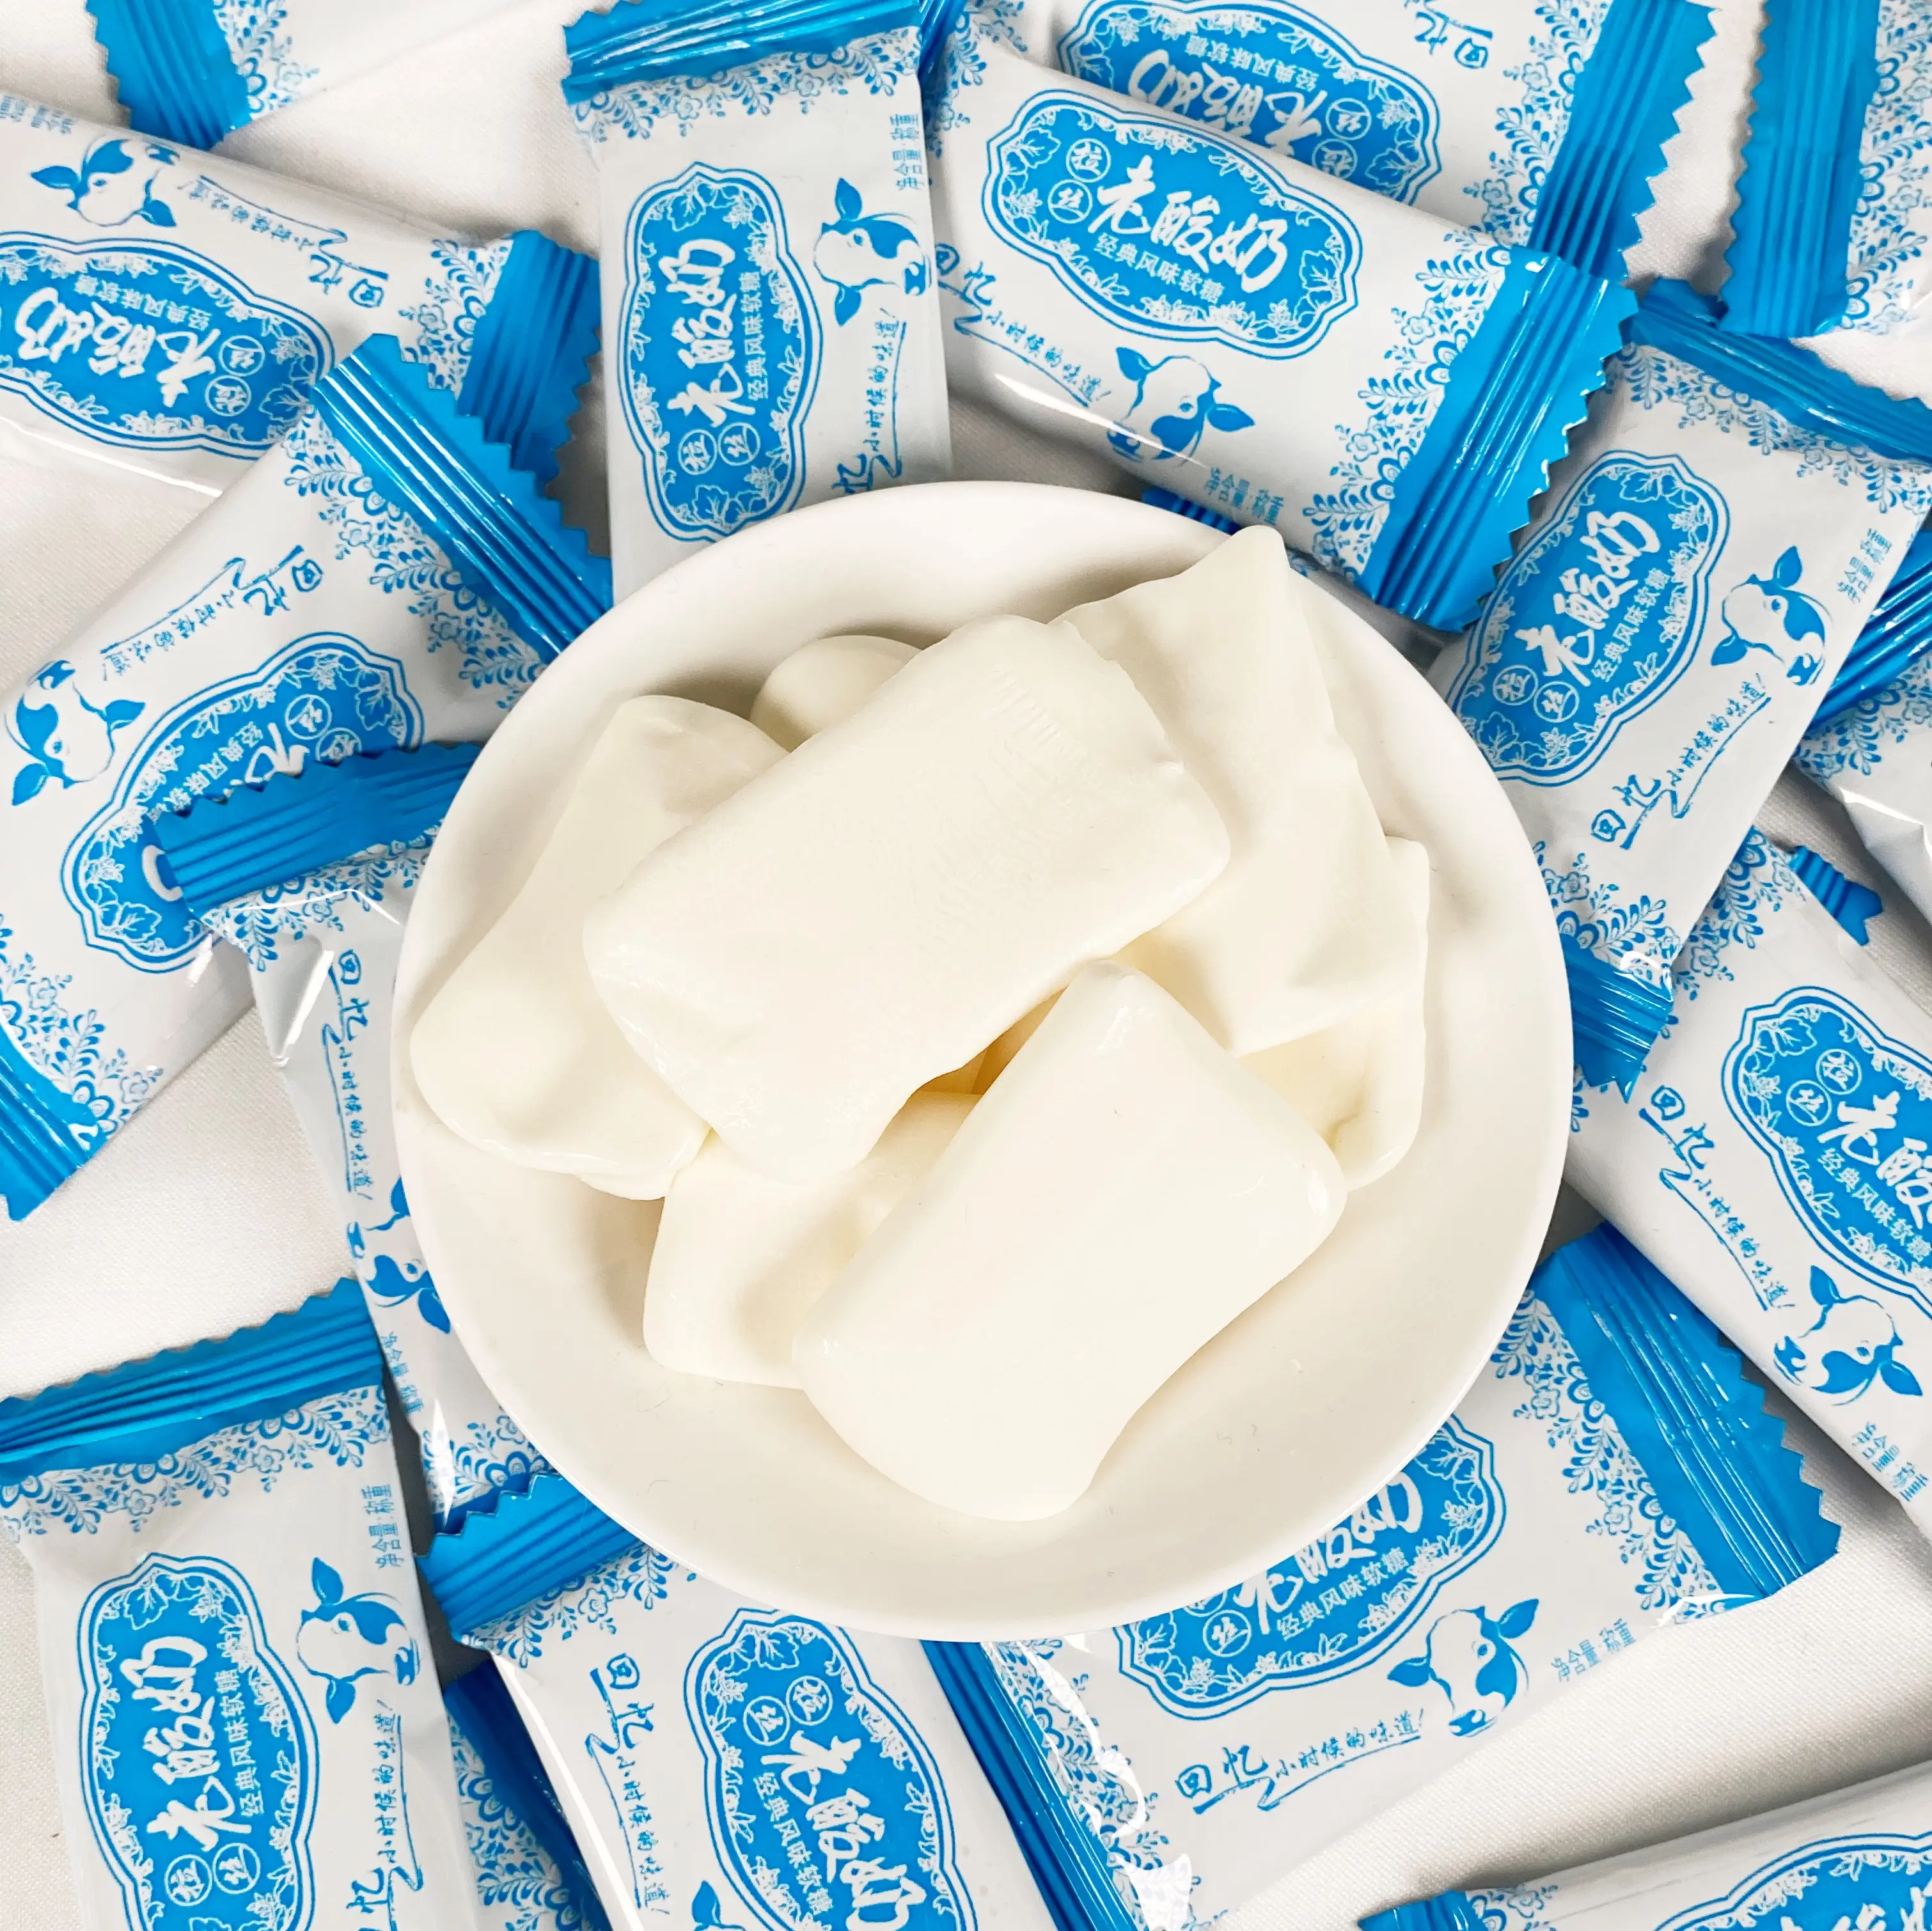 뜨거운 판매 스트레칭 요구르트 말차 씹는 사탕 맛있는 달콤하고 신 질긴 우유 토피 부드러운 사탕